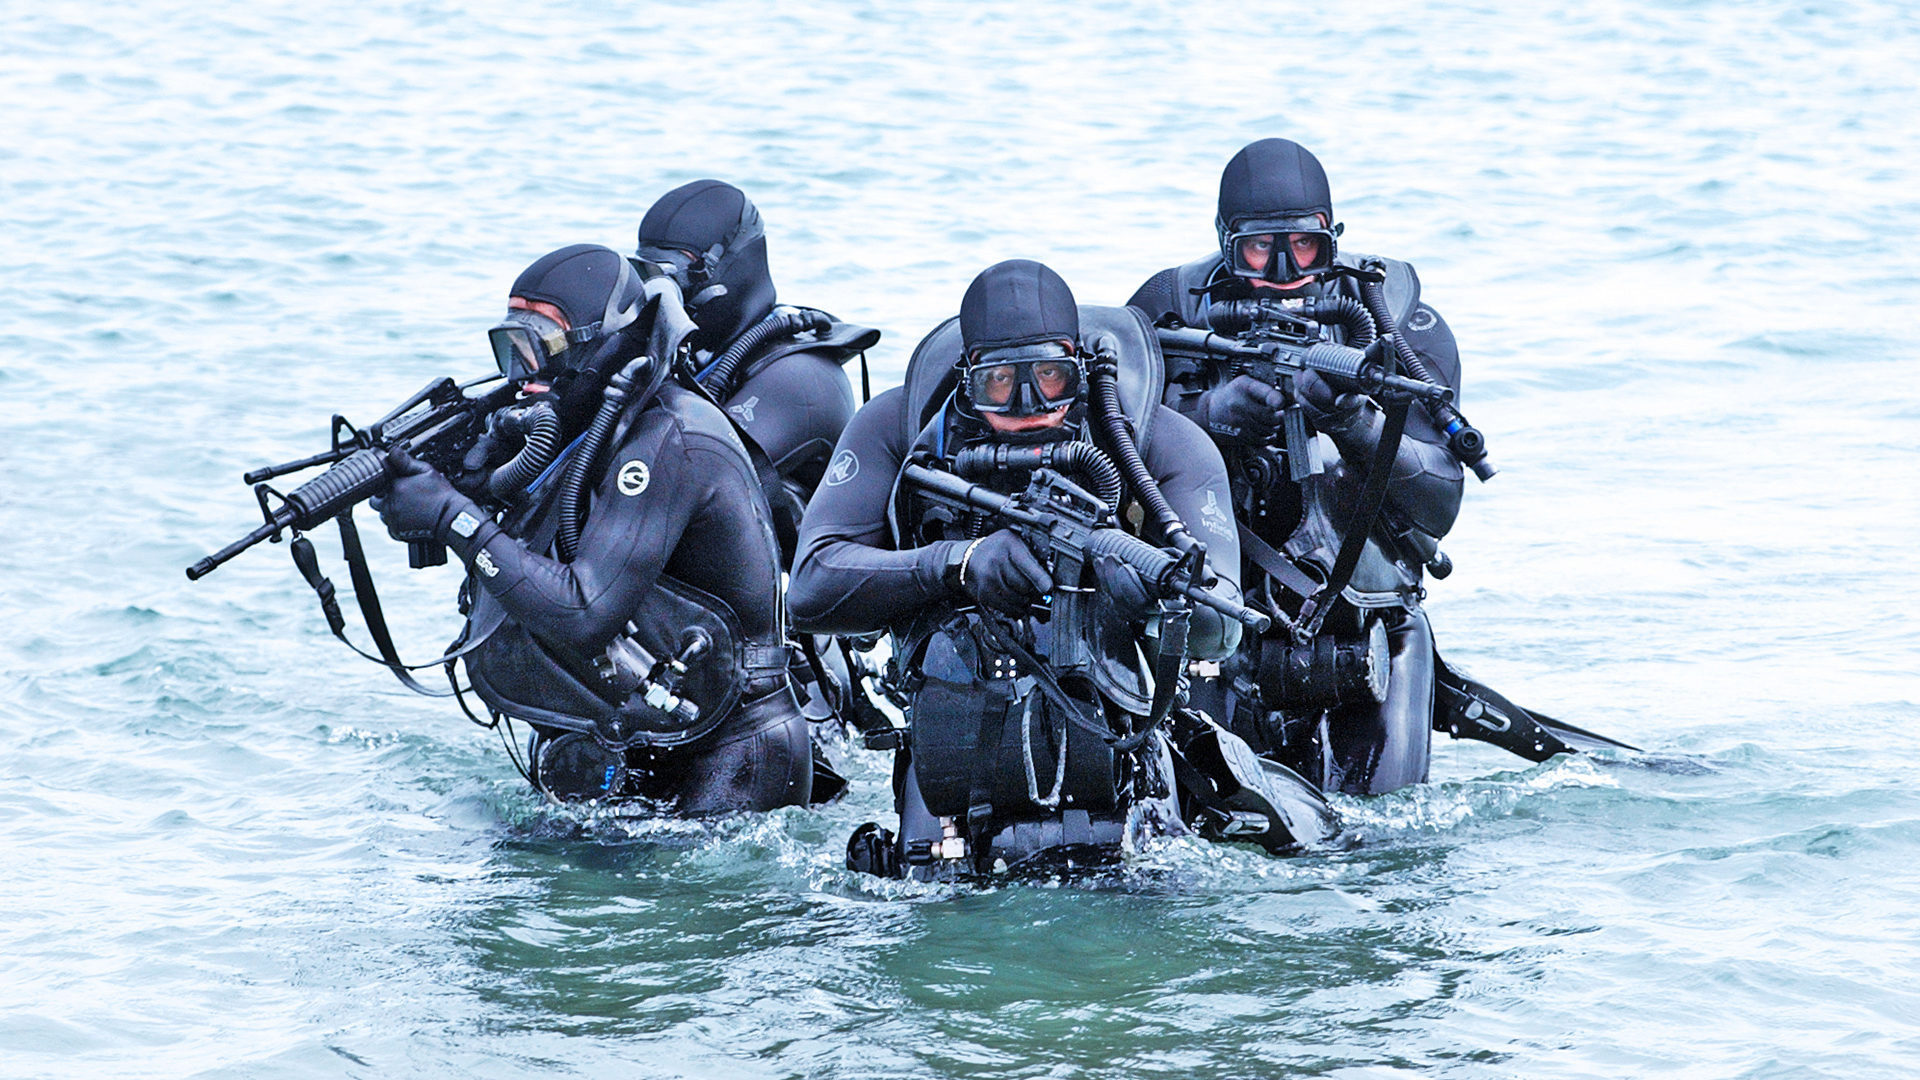 Cetosis buceadores navy seals